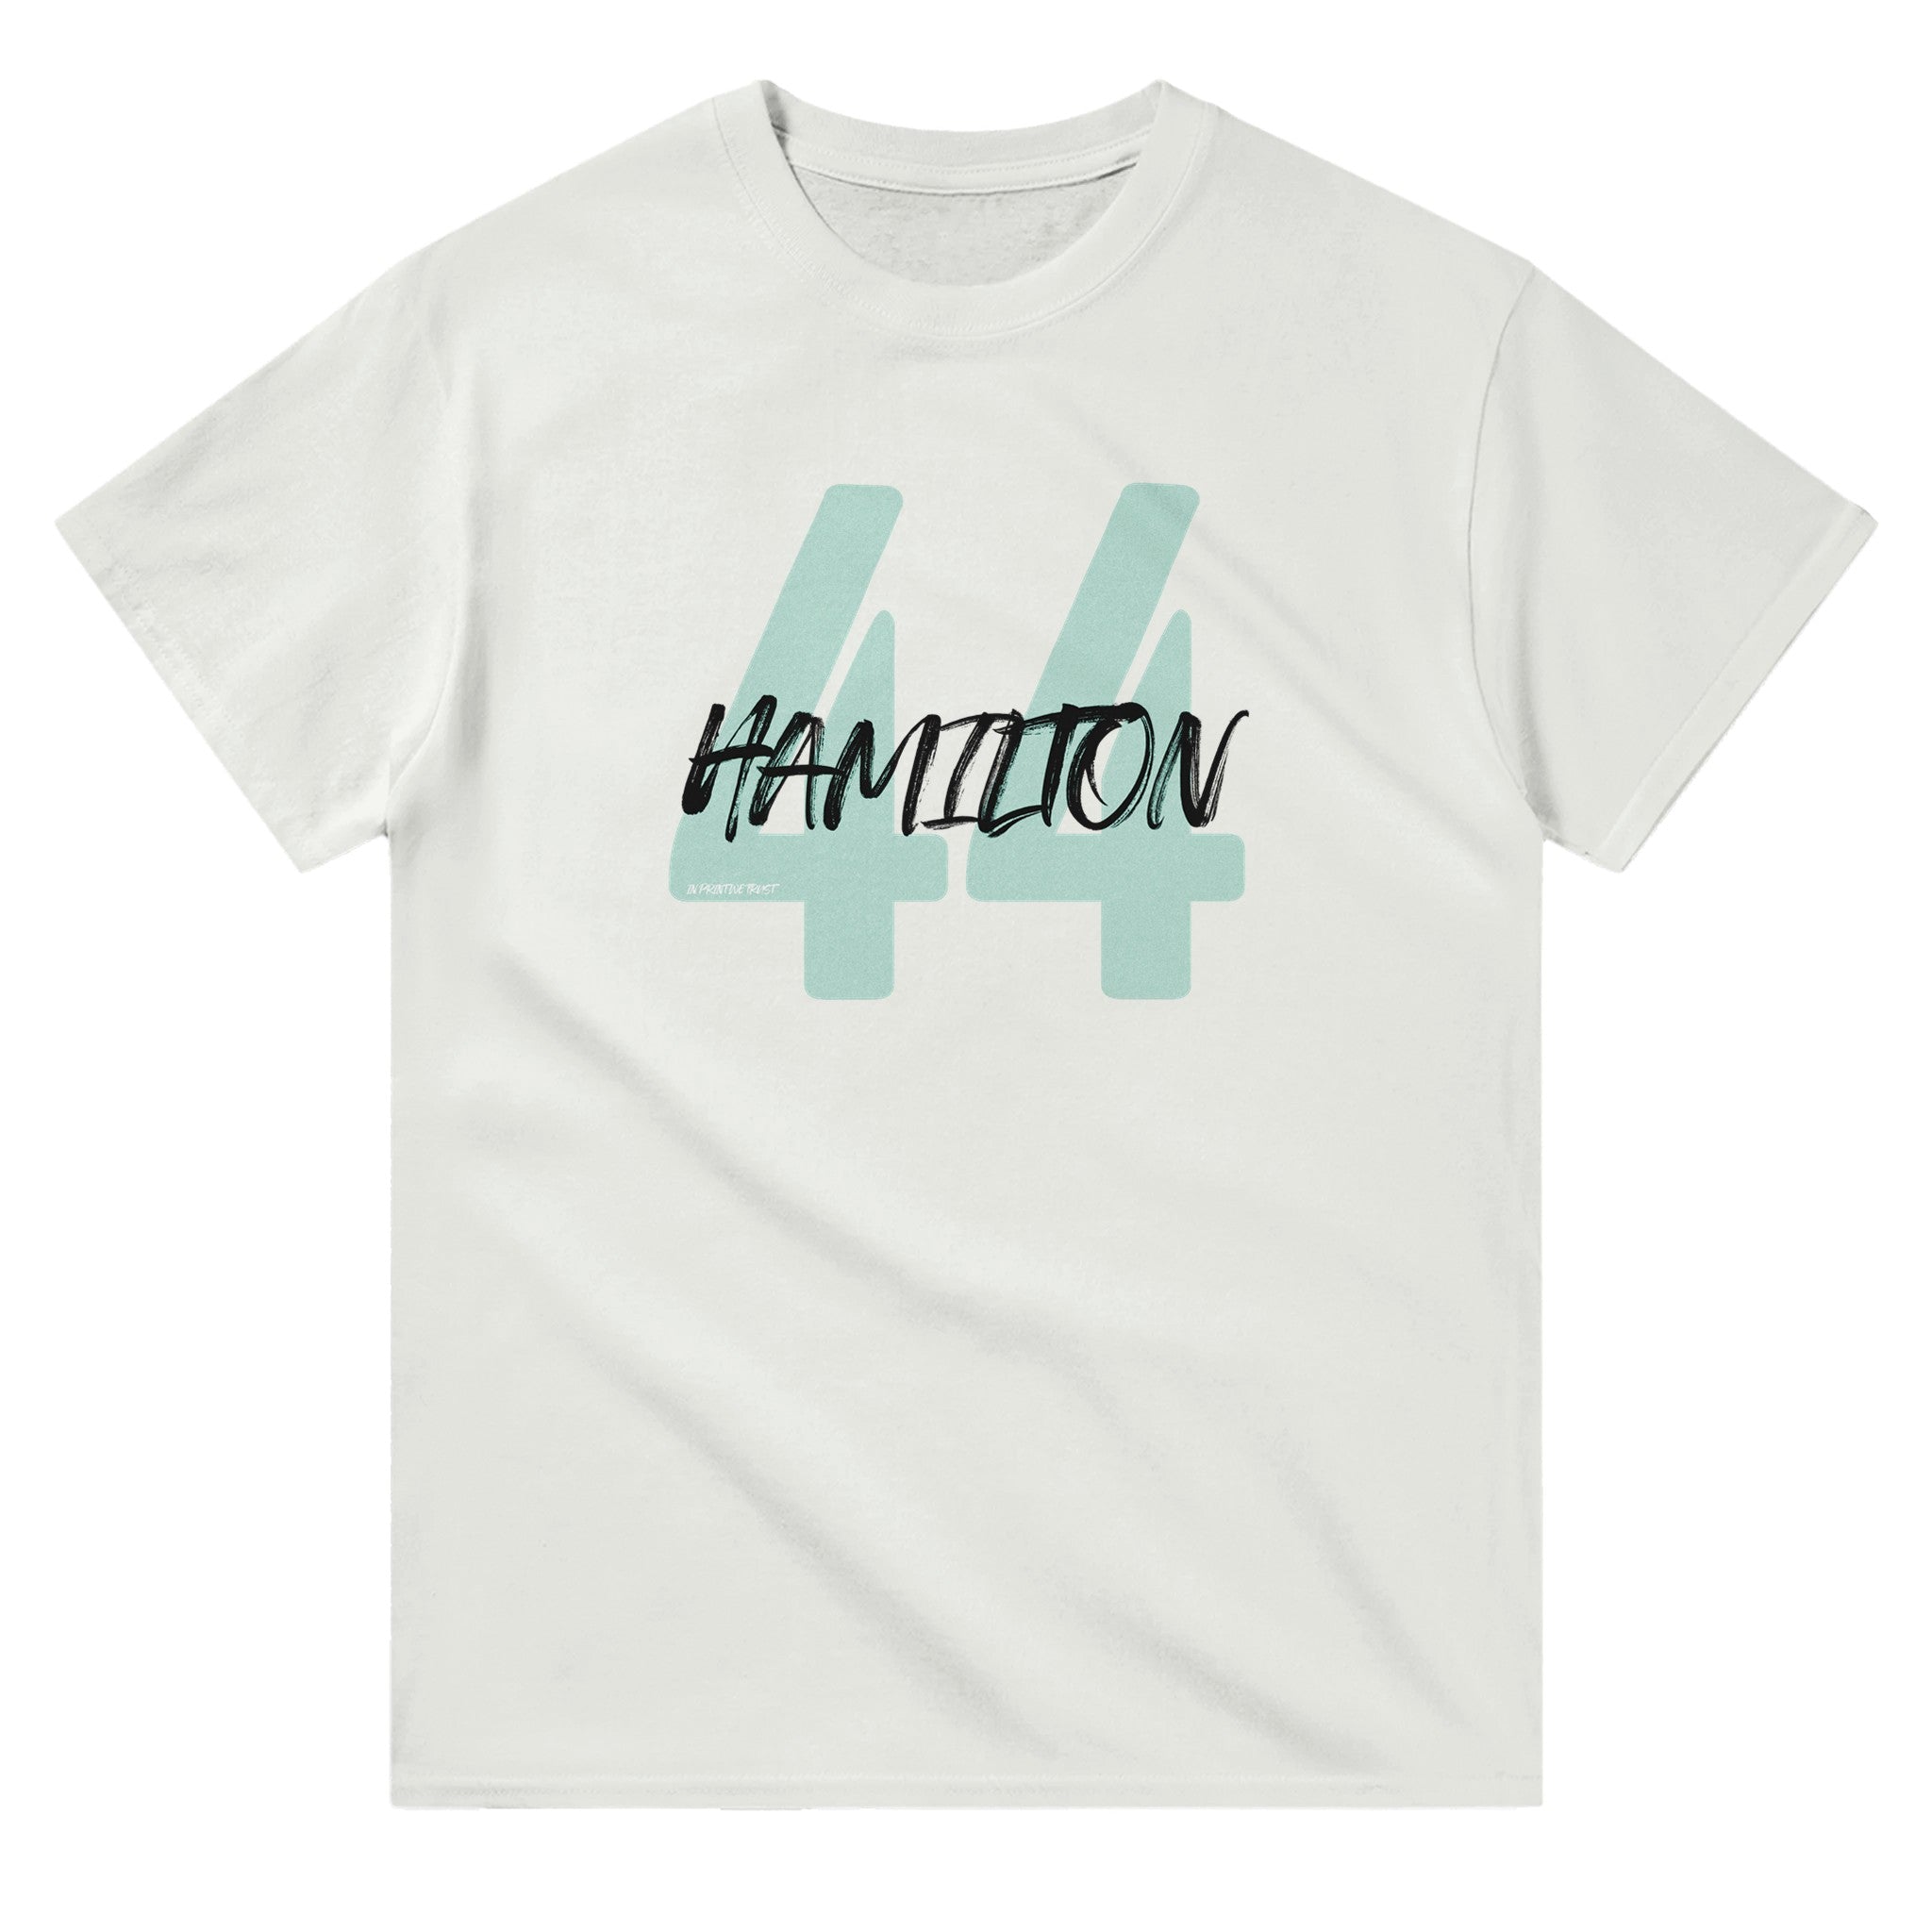 'Hamilton 44' classic tee - In Print We Trust